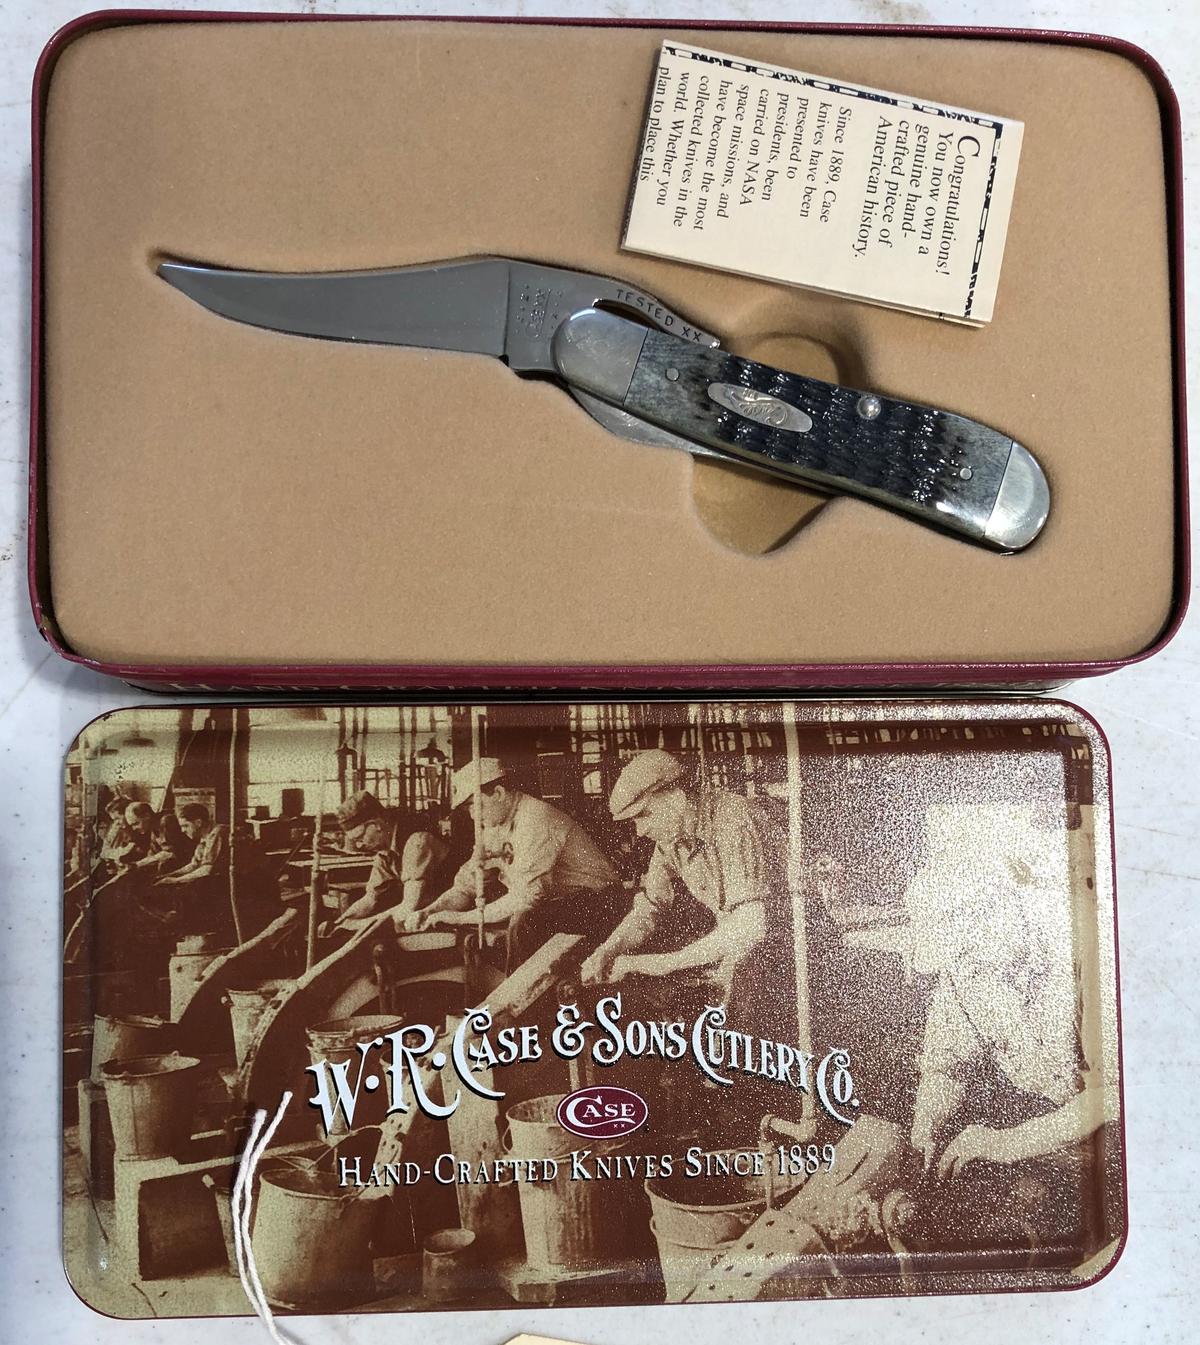 W.R. Case Knife in Metal Box